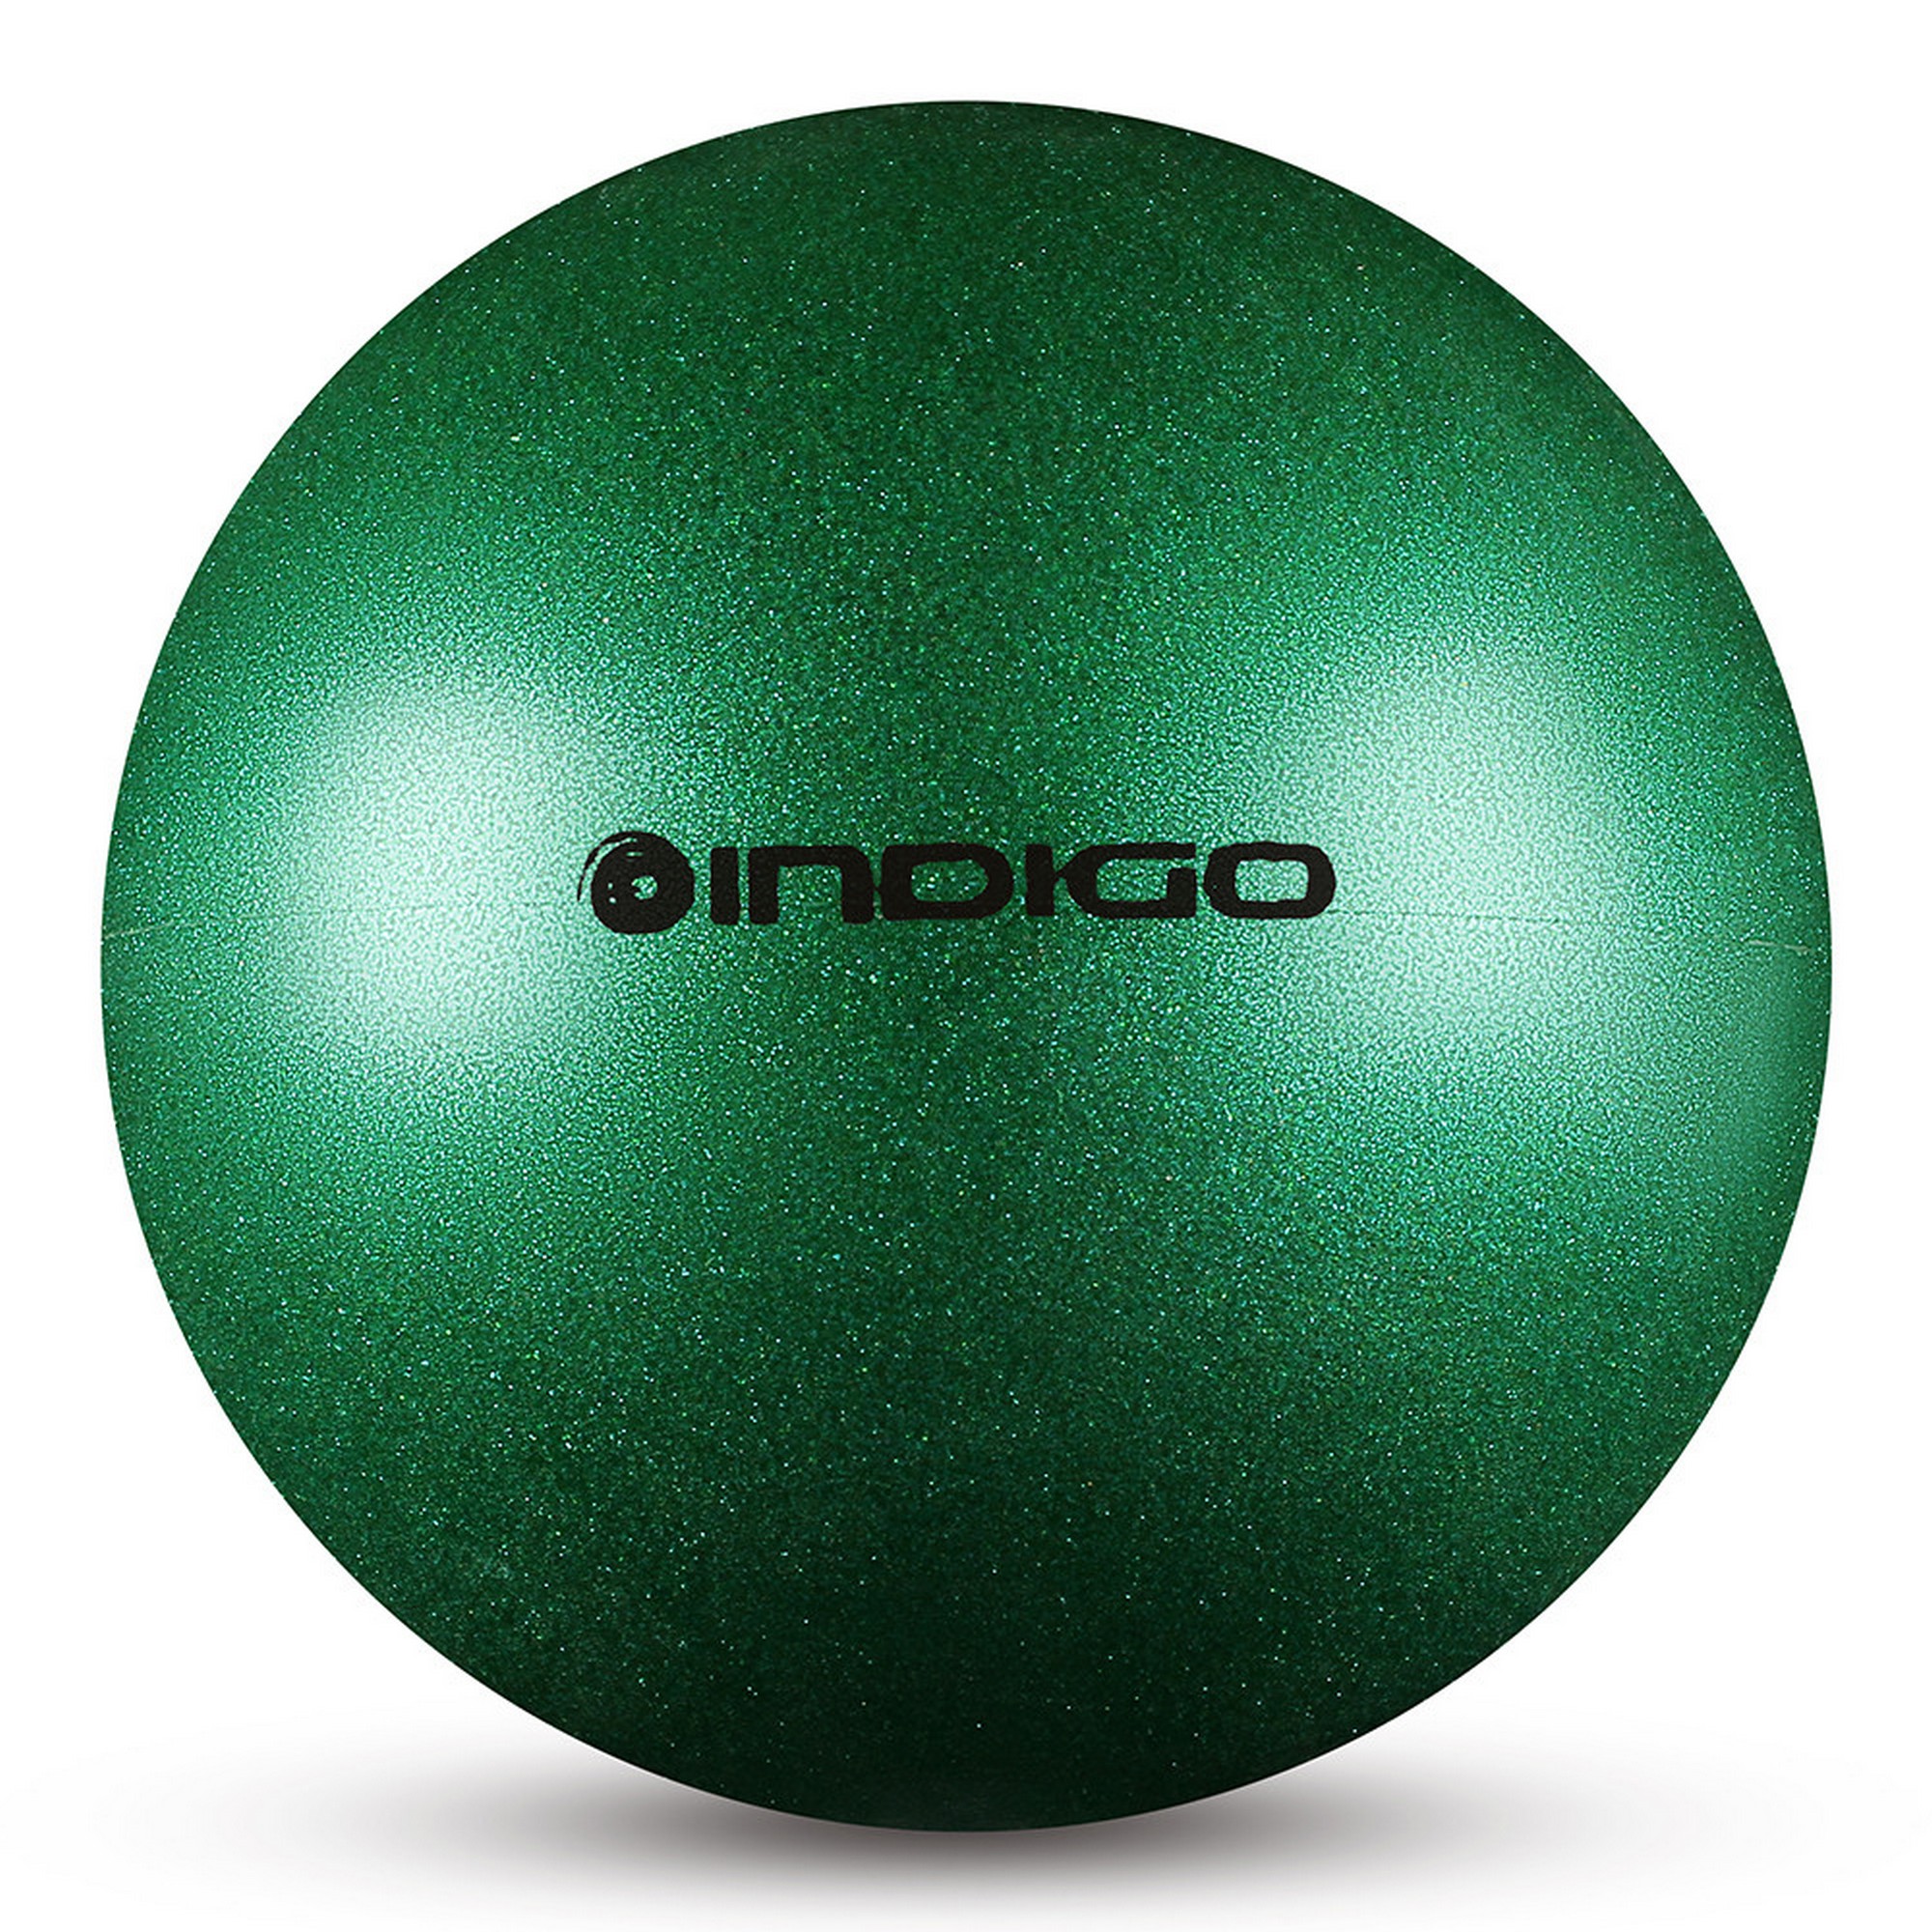 Мяч для художественной гимнастики d15см Indigo ПВХ IN119-GR зеленый металлик с блестками 2000_2000